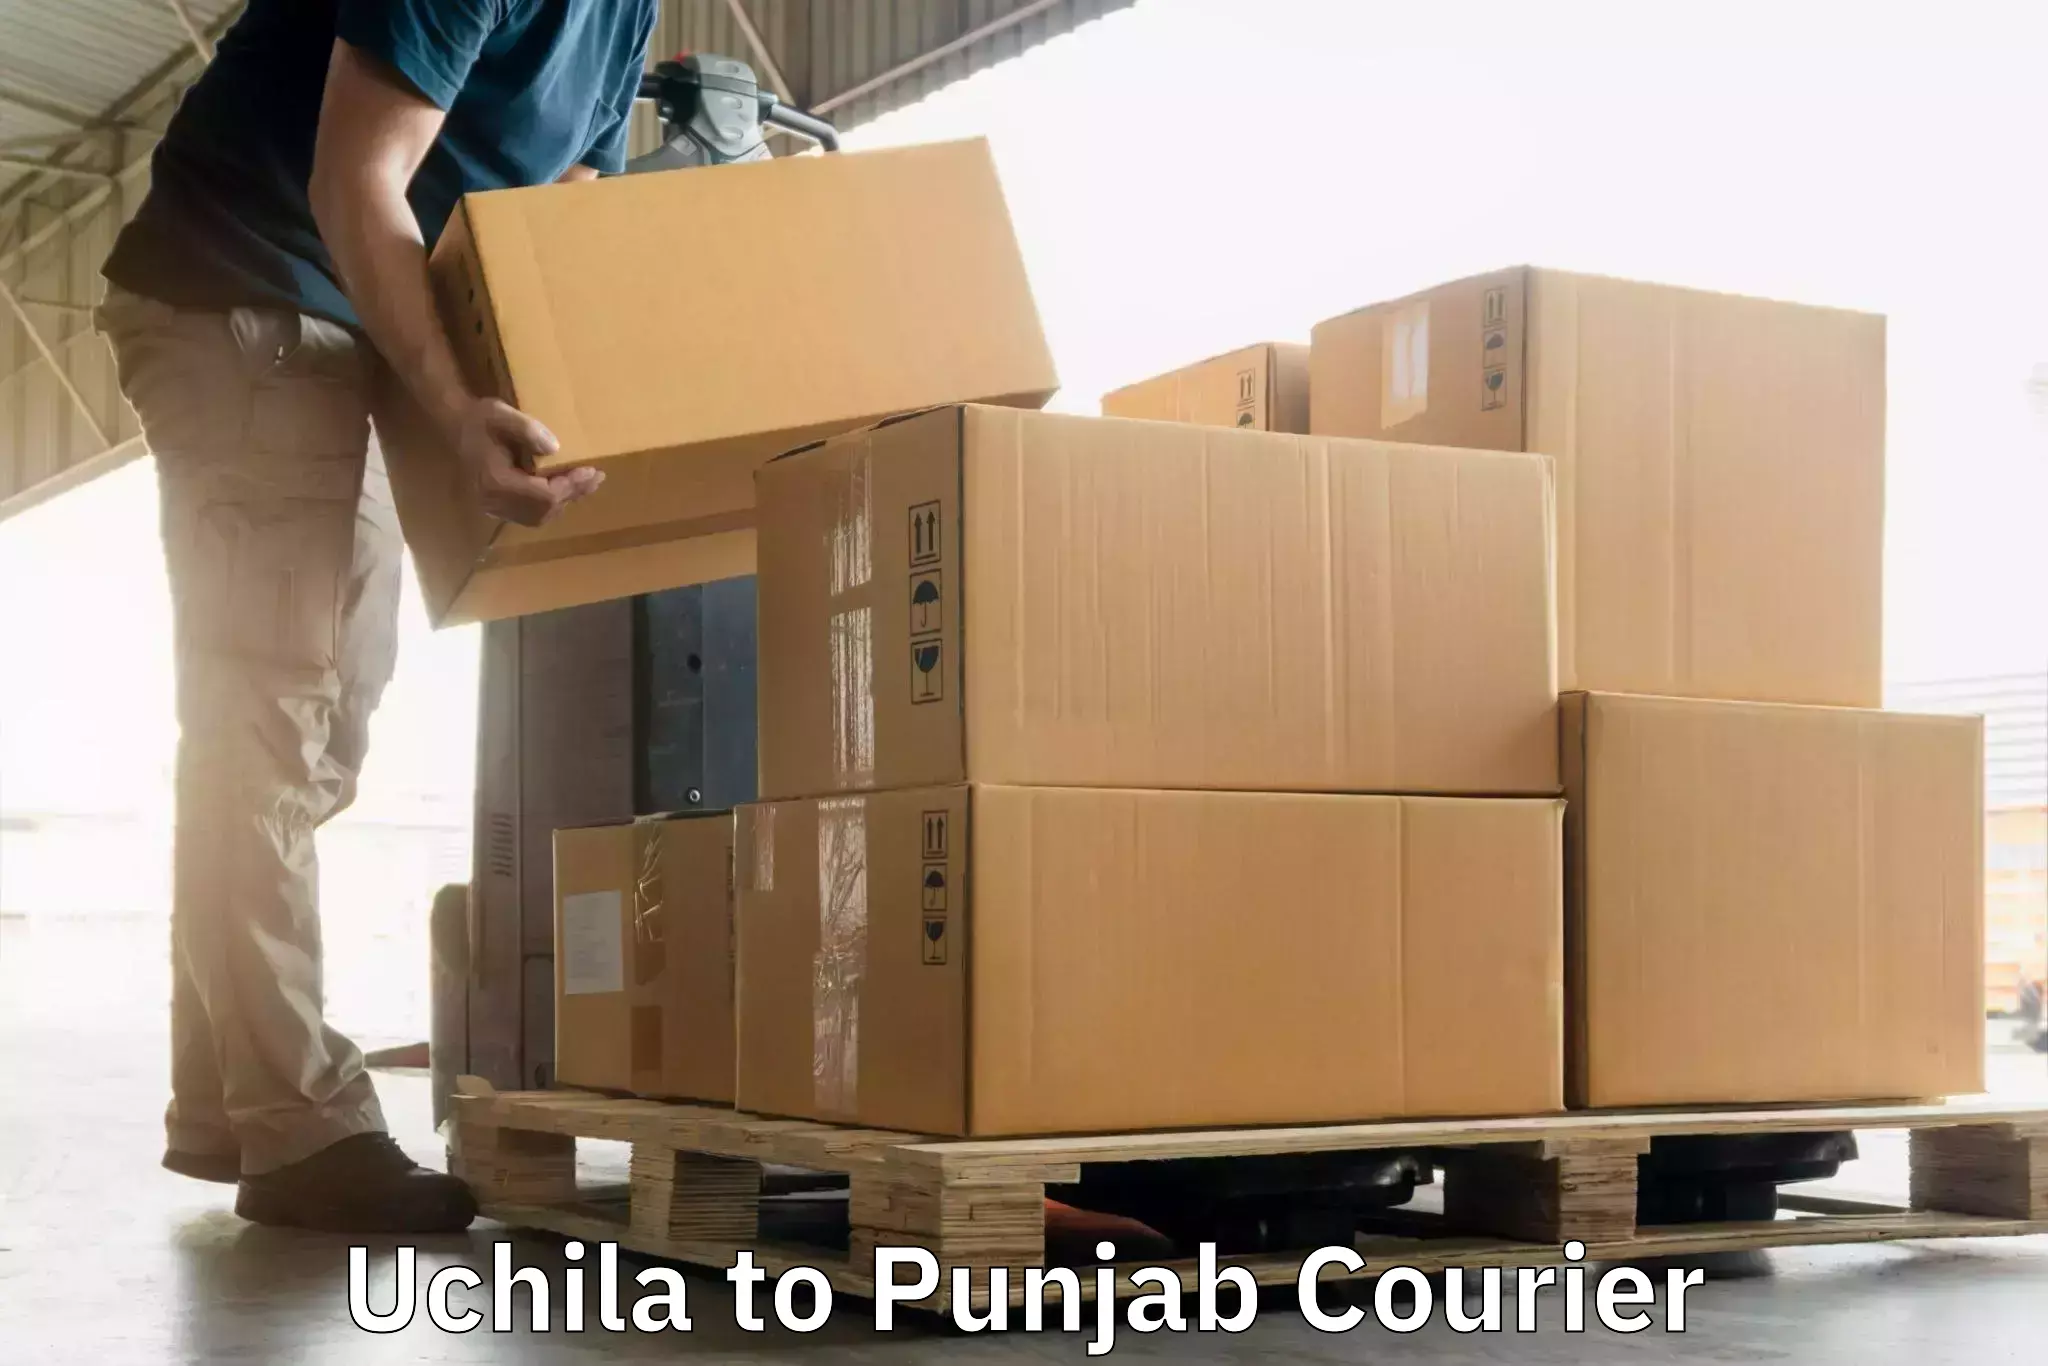 Digital courier platforms Uchila to Rampura Phul